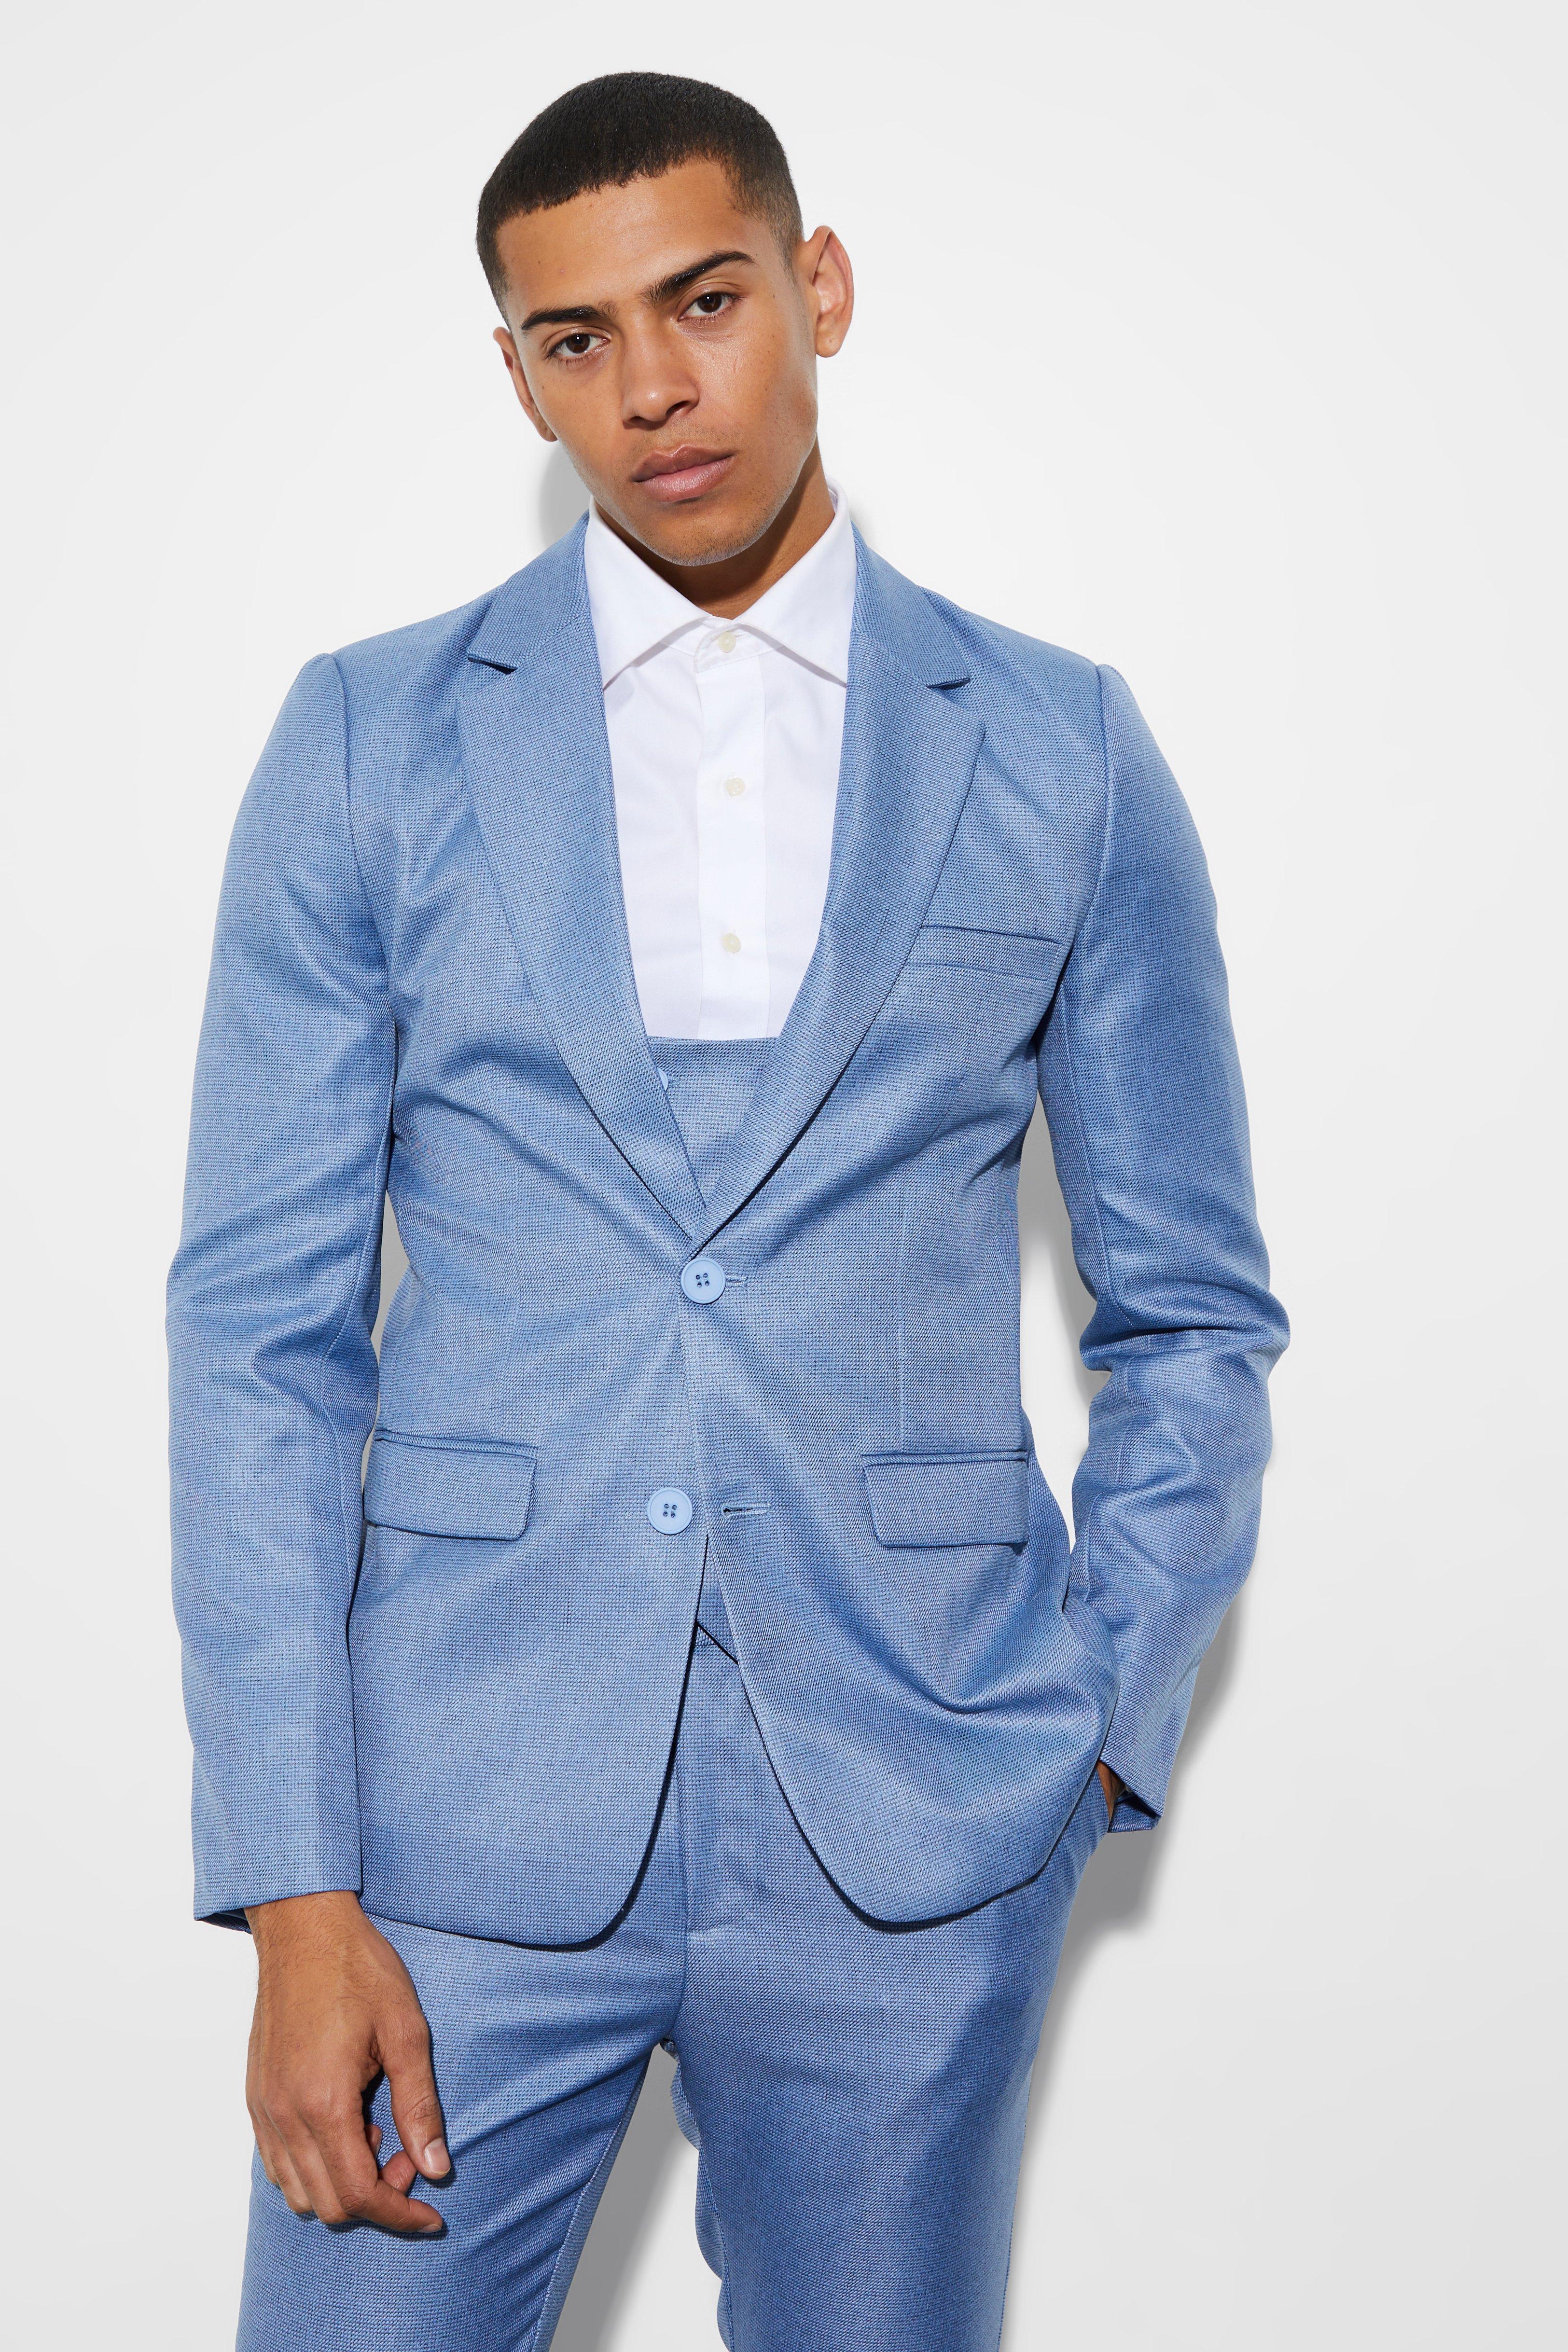 veste de costume courte texturée homme - bleu - 38, bleu